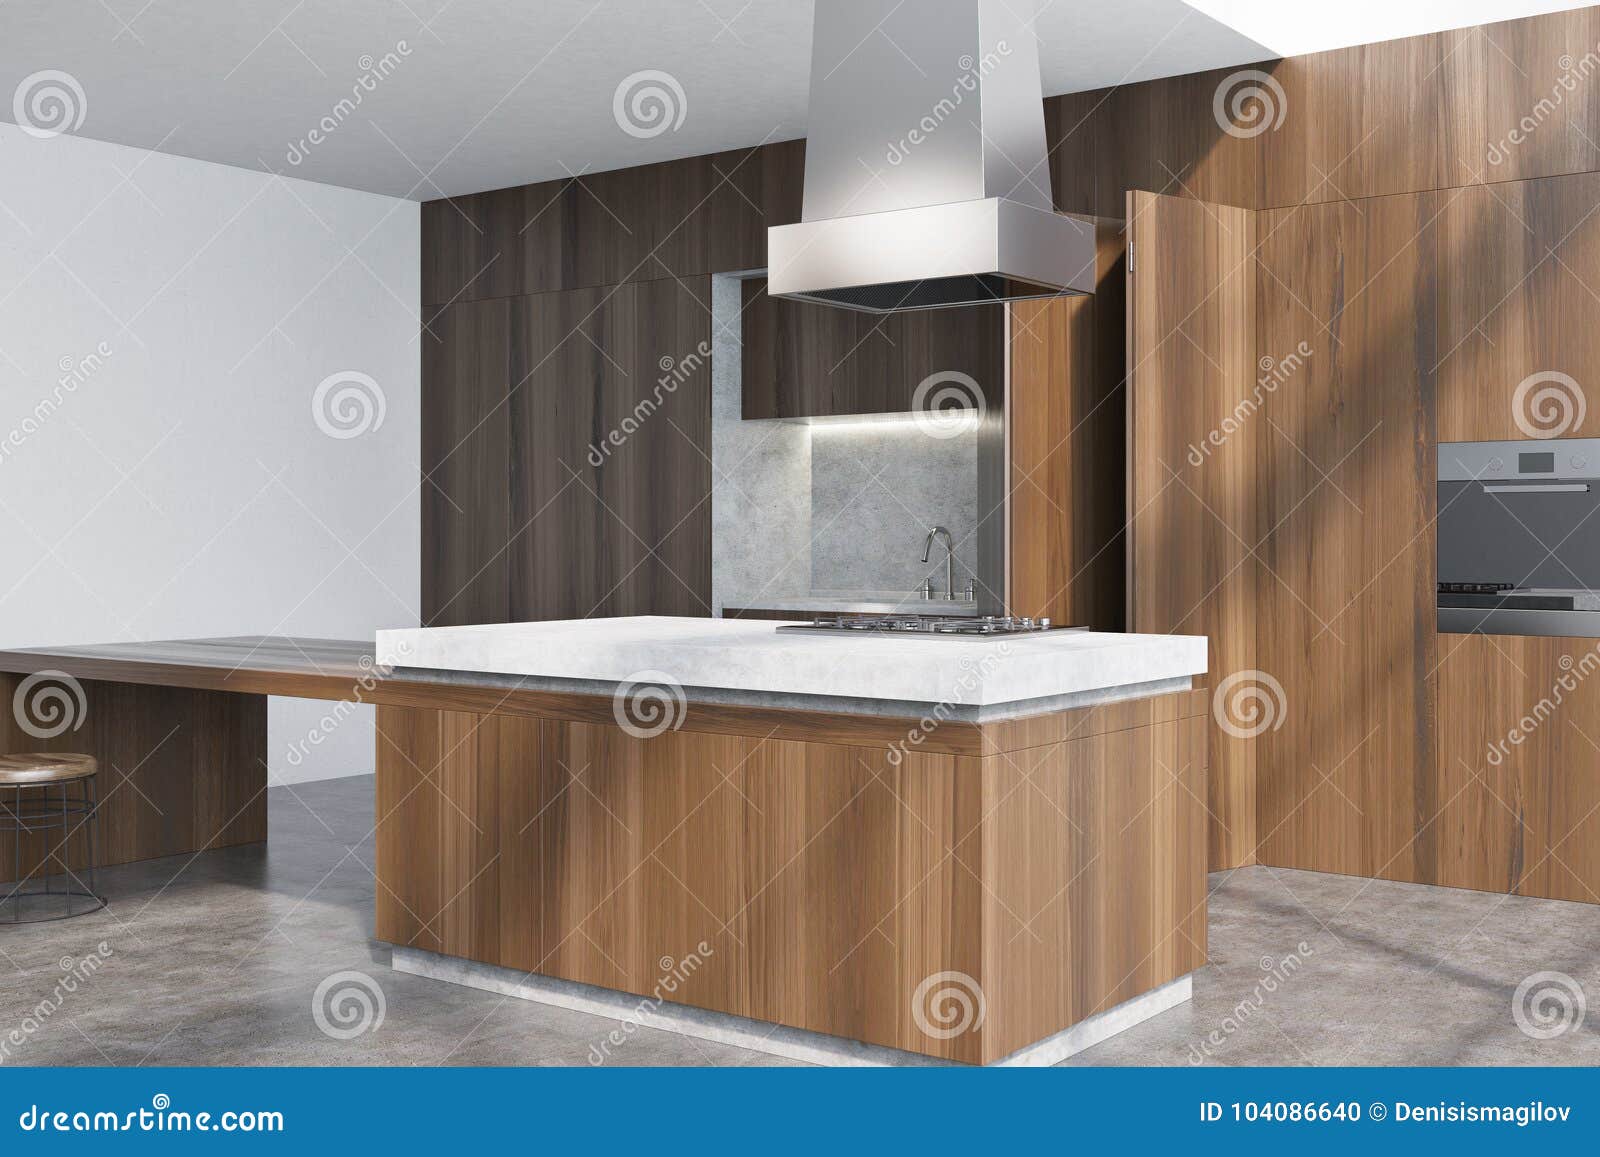 Dark Wooden Kitchen Counter Corner Stock Illustration